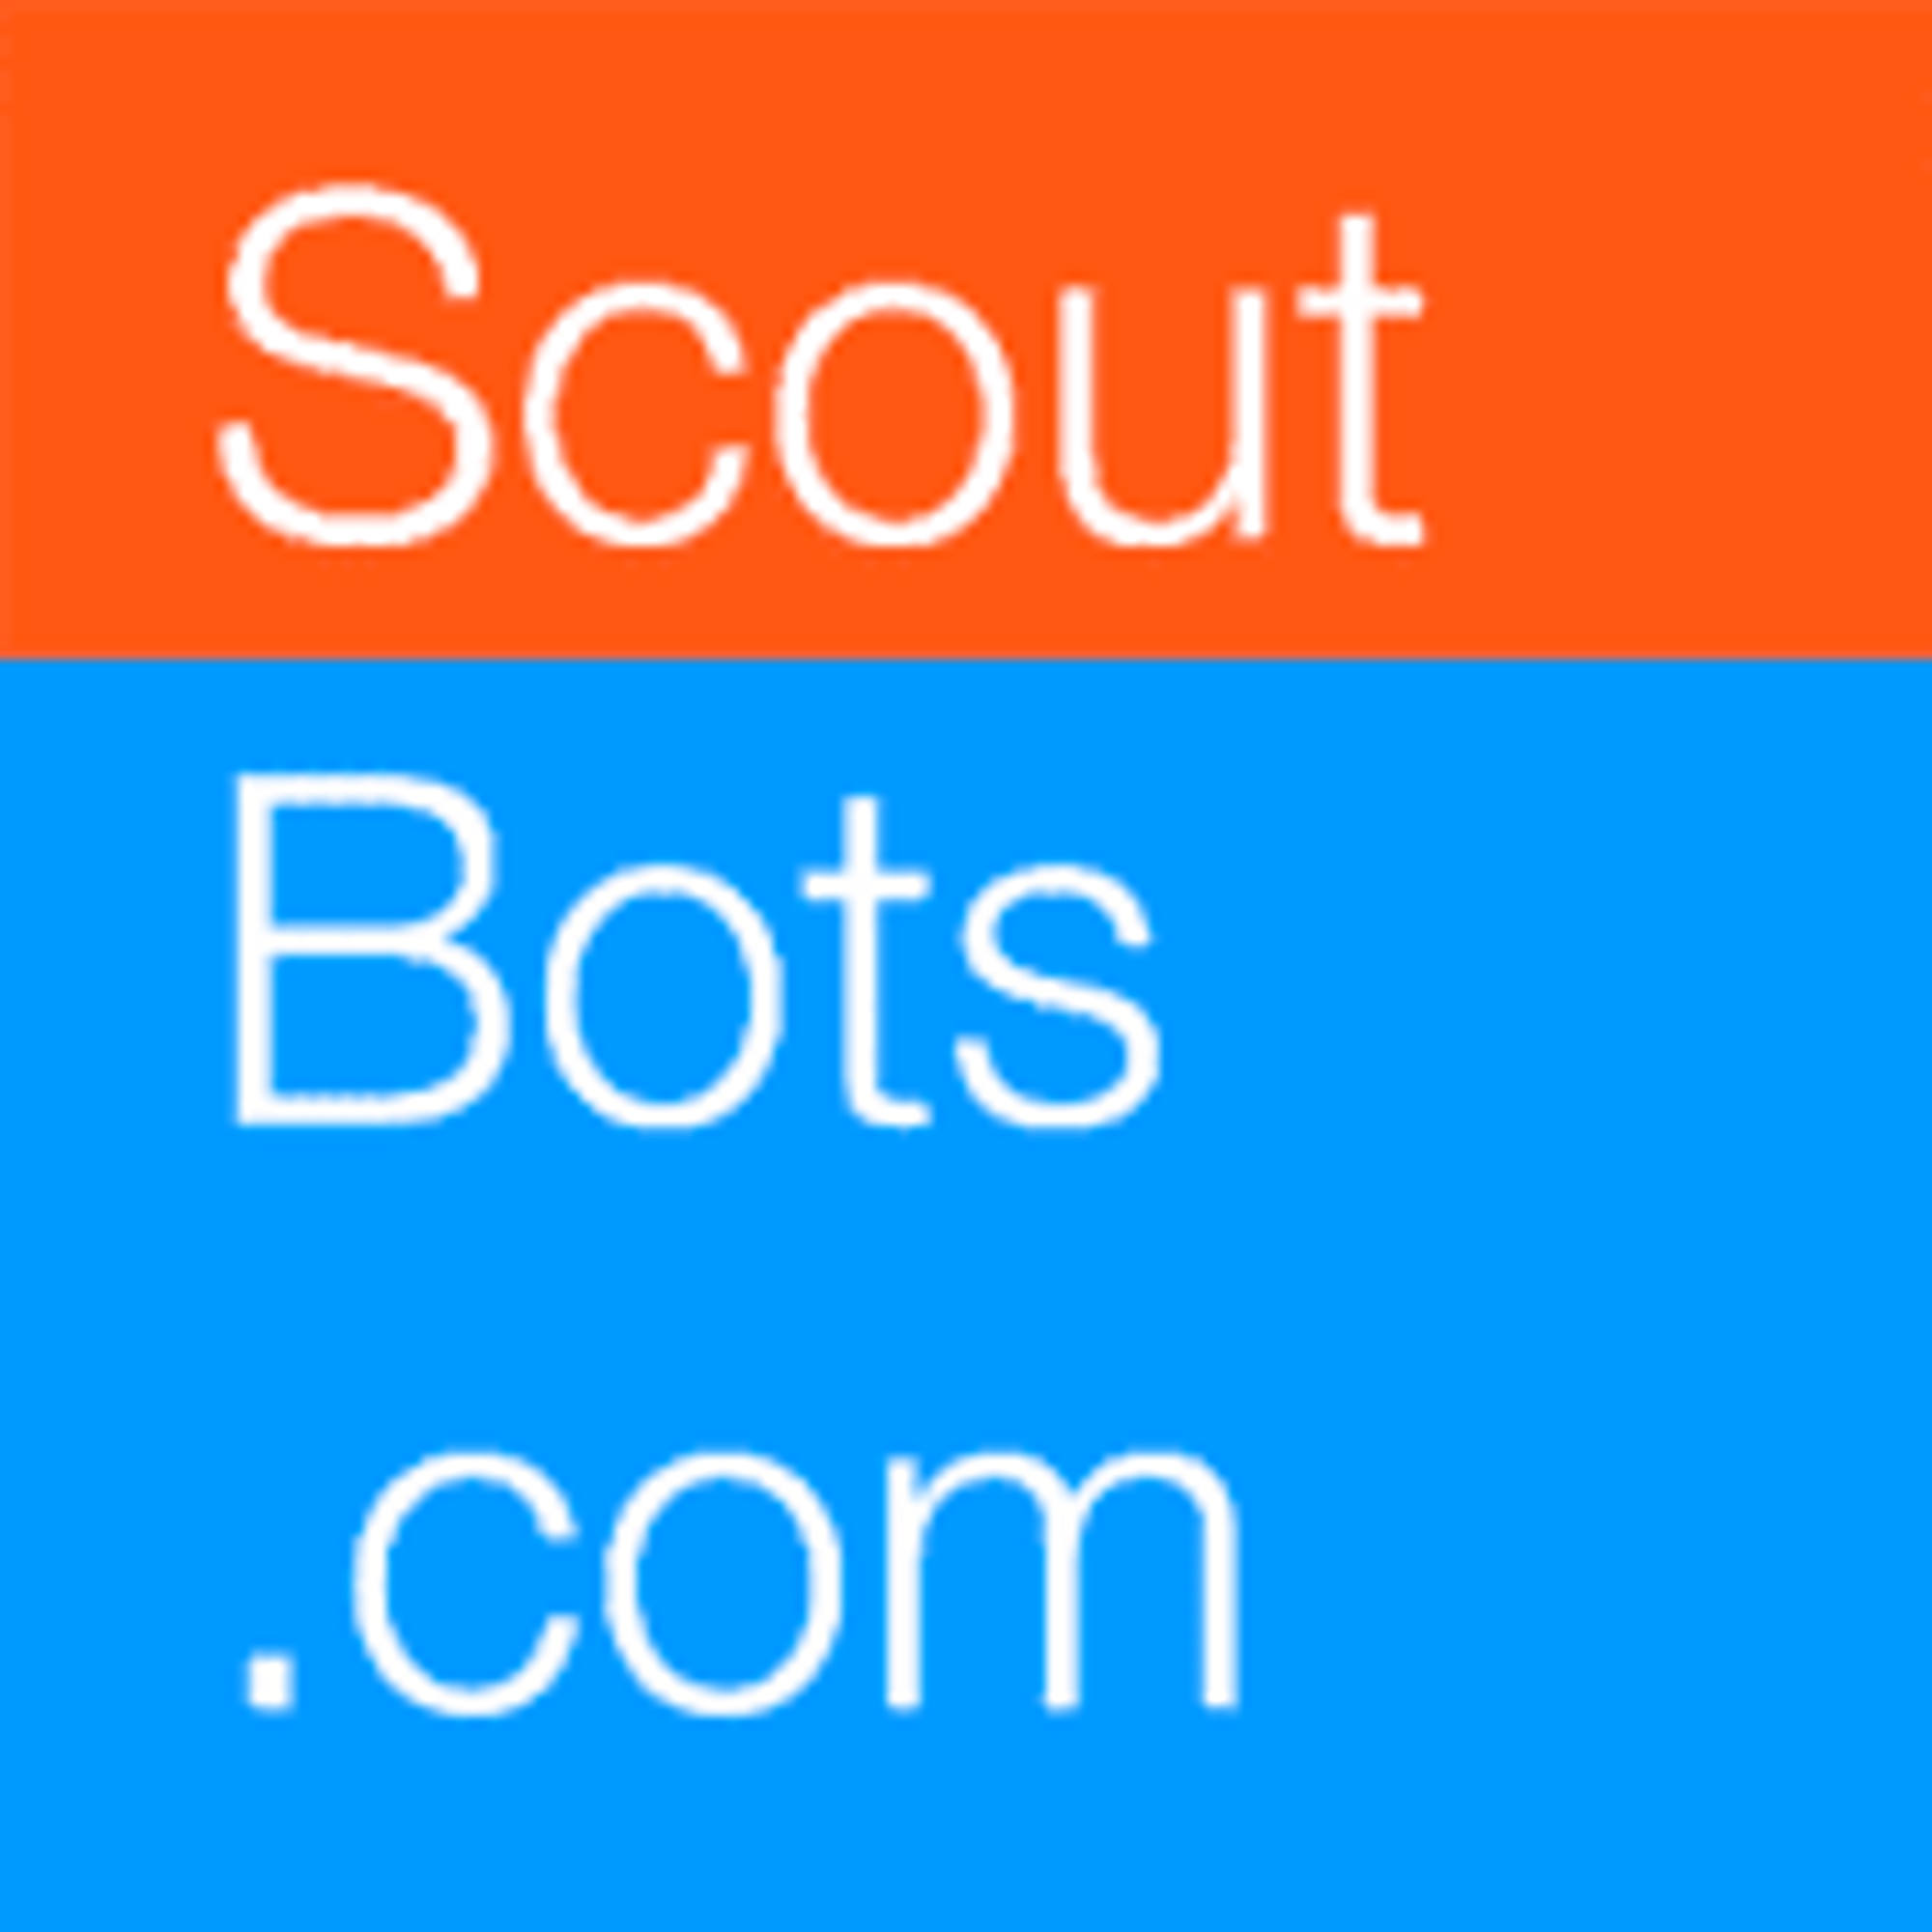 Scoutbots